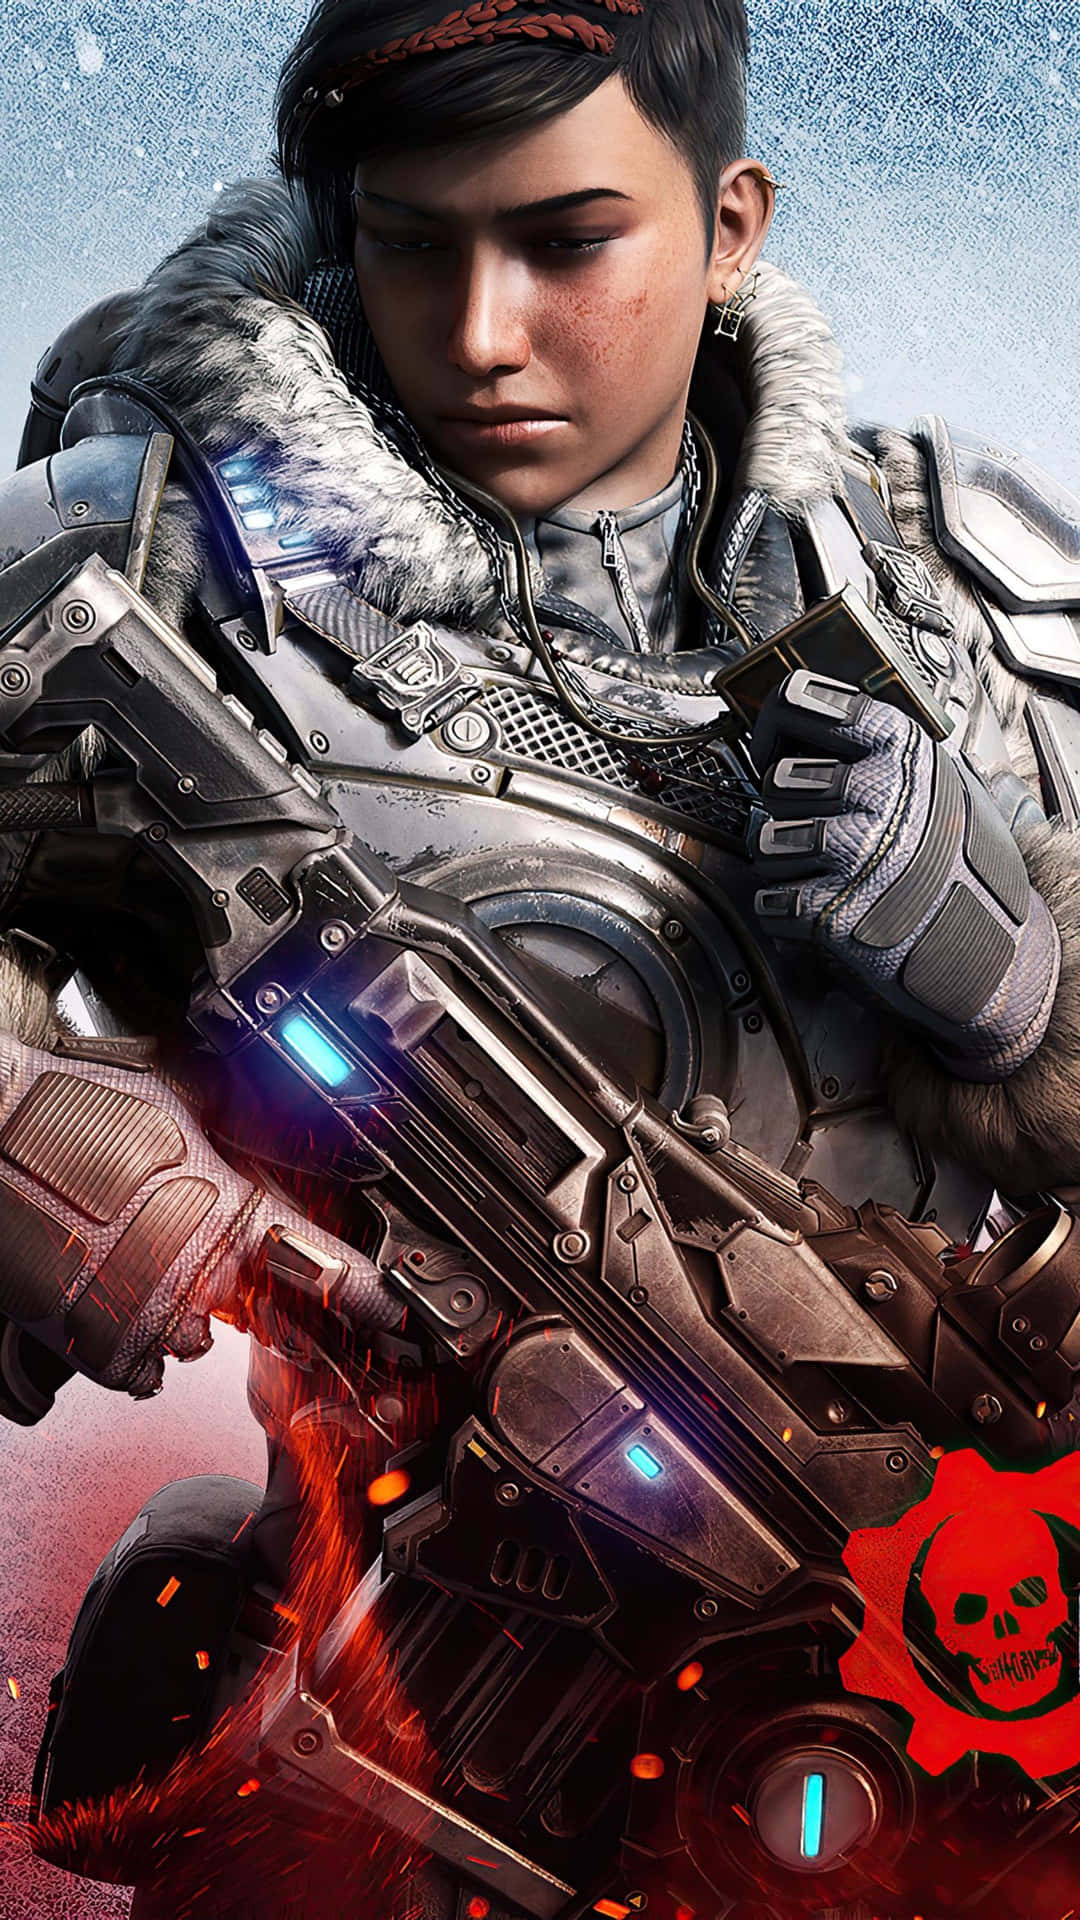 Viviun Combattimento Intenso E Pieno D'azione Con La Versione Android Di Gears Of War 5